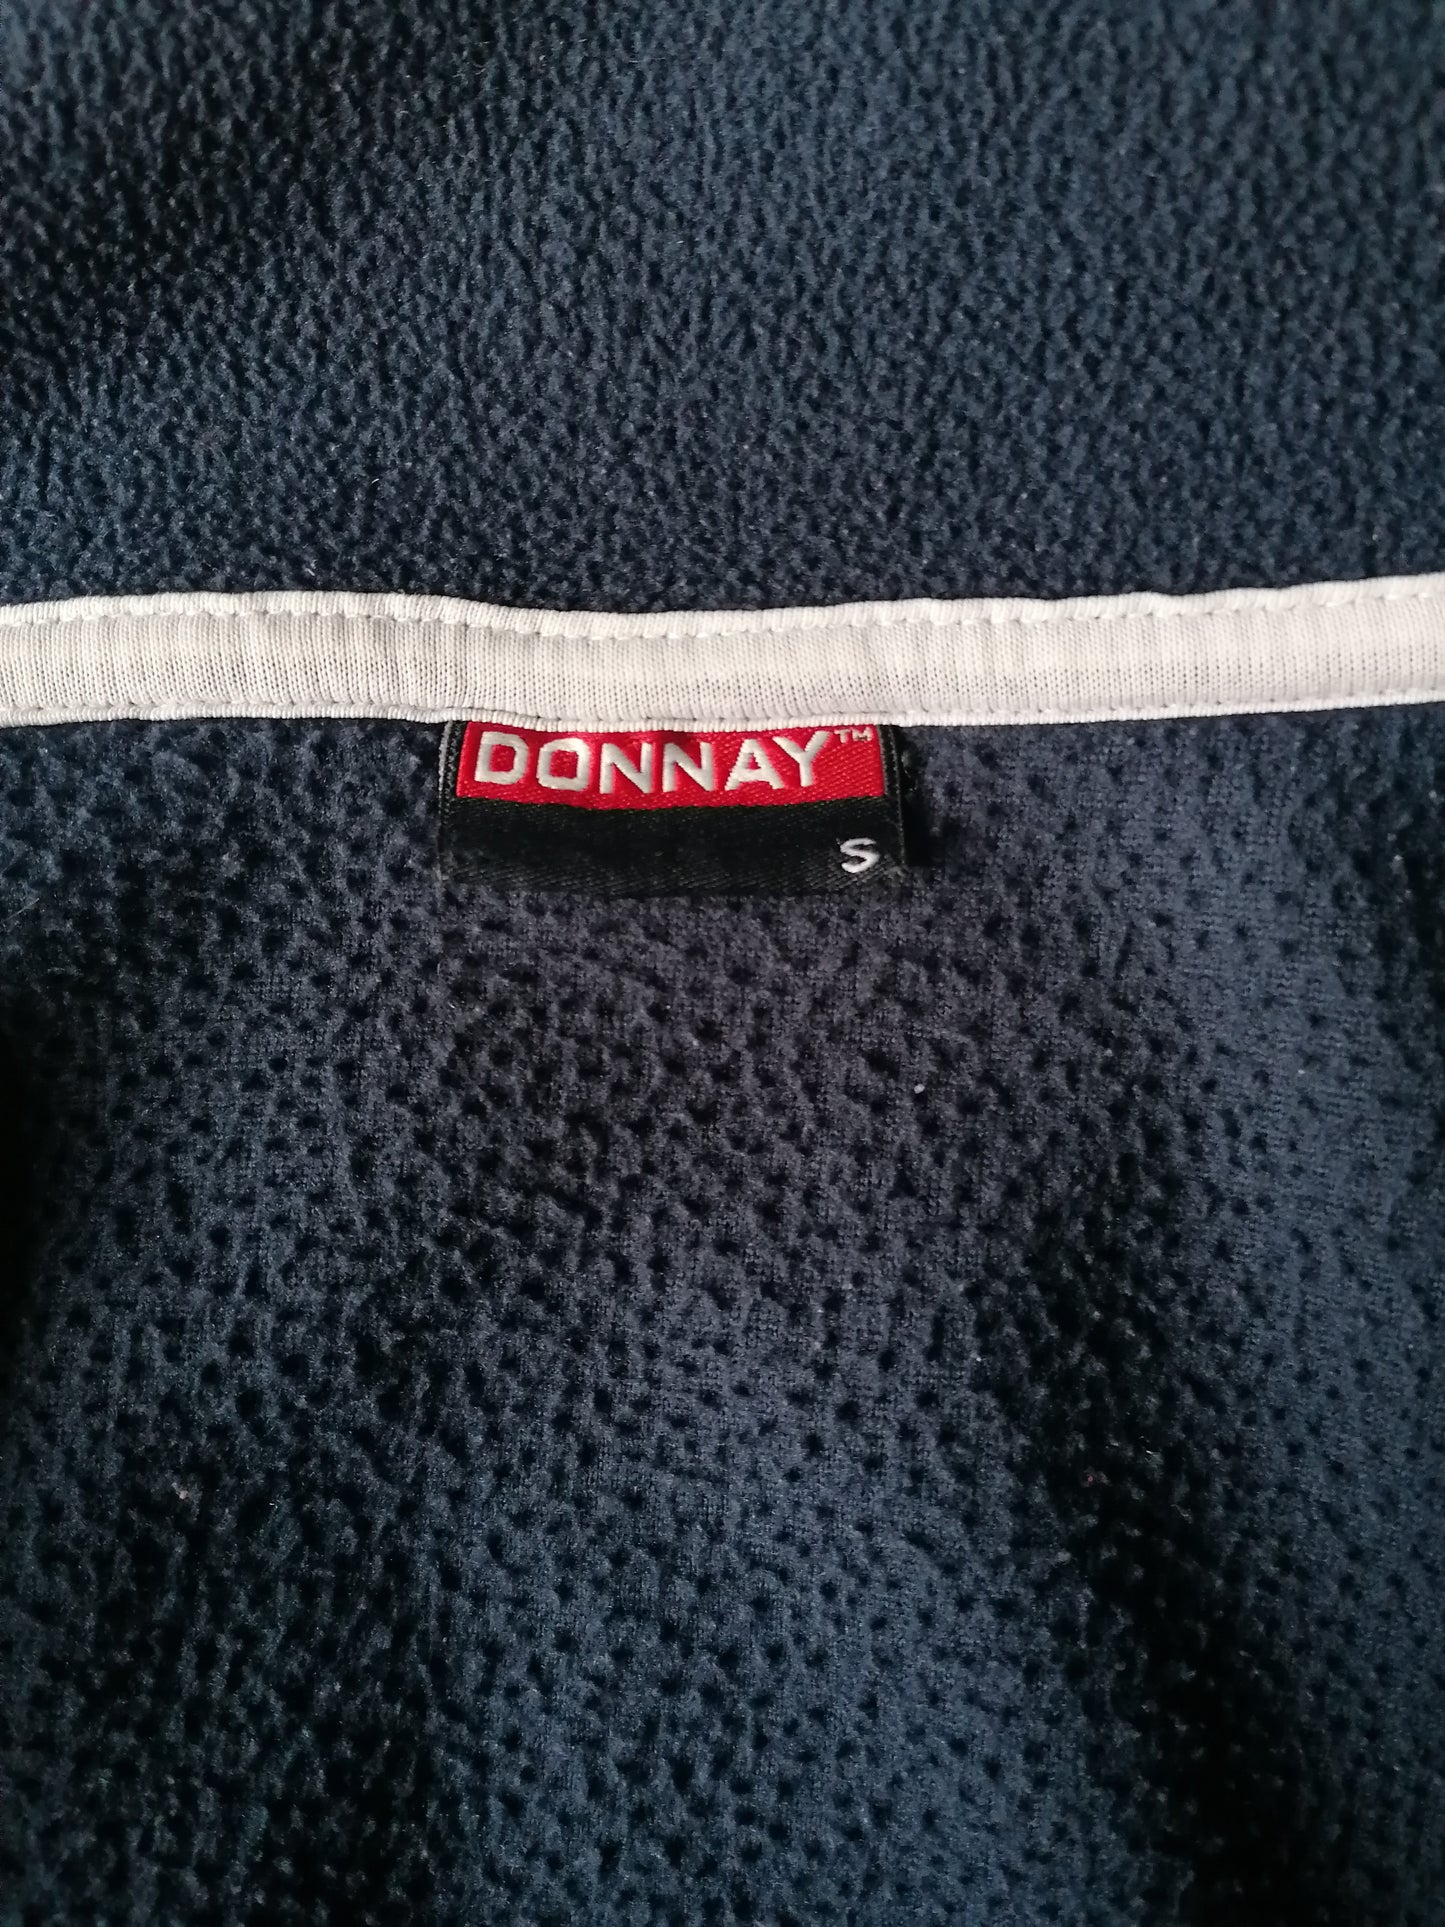 Donnay Fleece Vest. Dark blue learned. Size S.